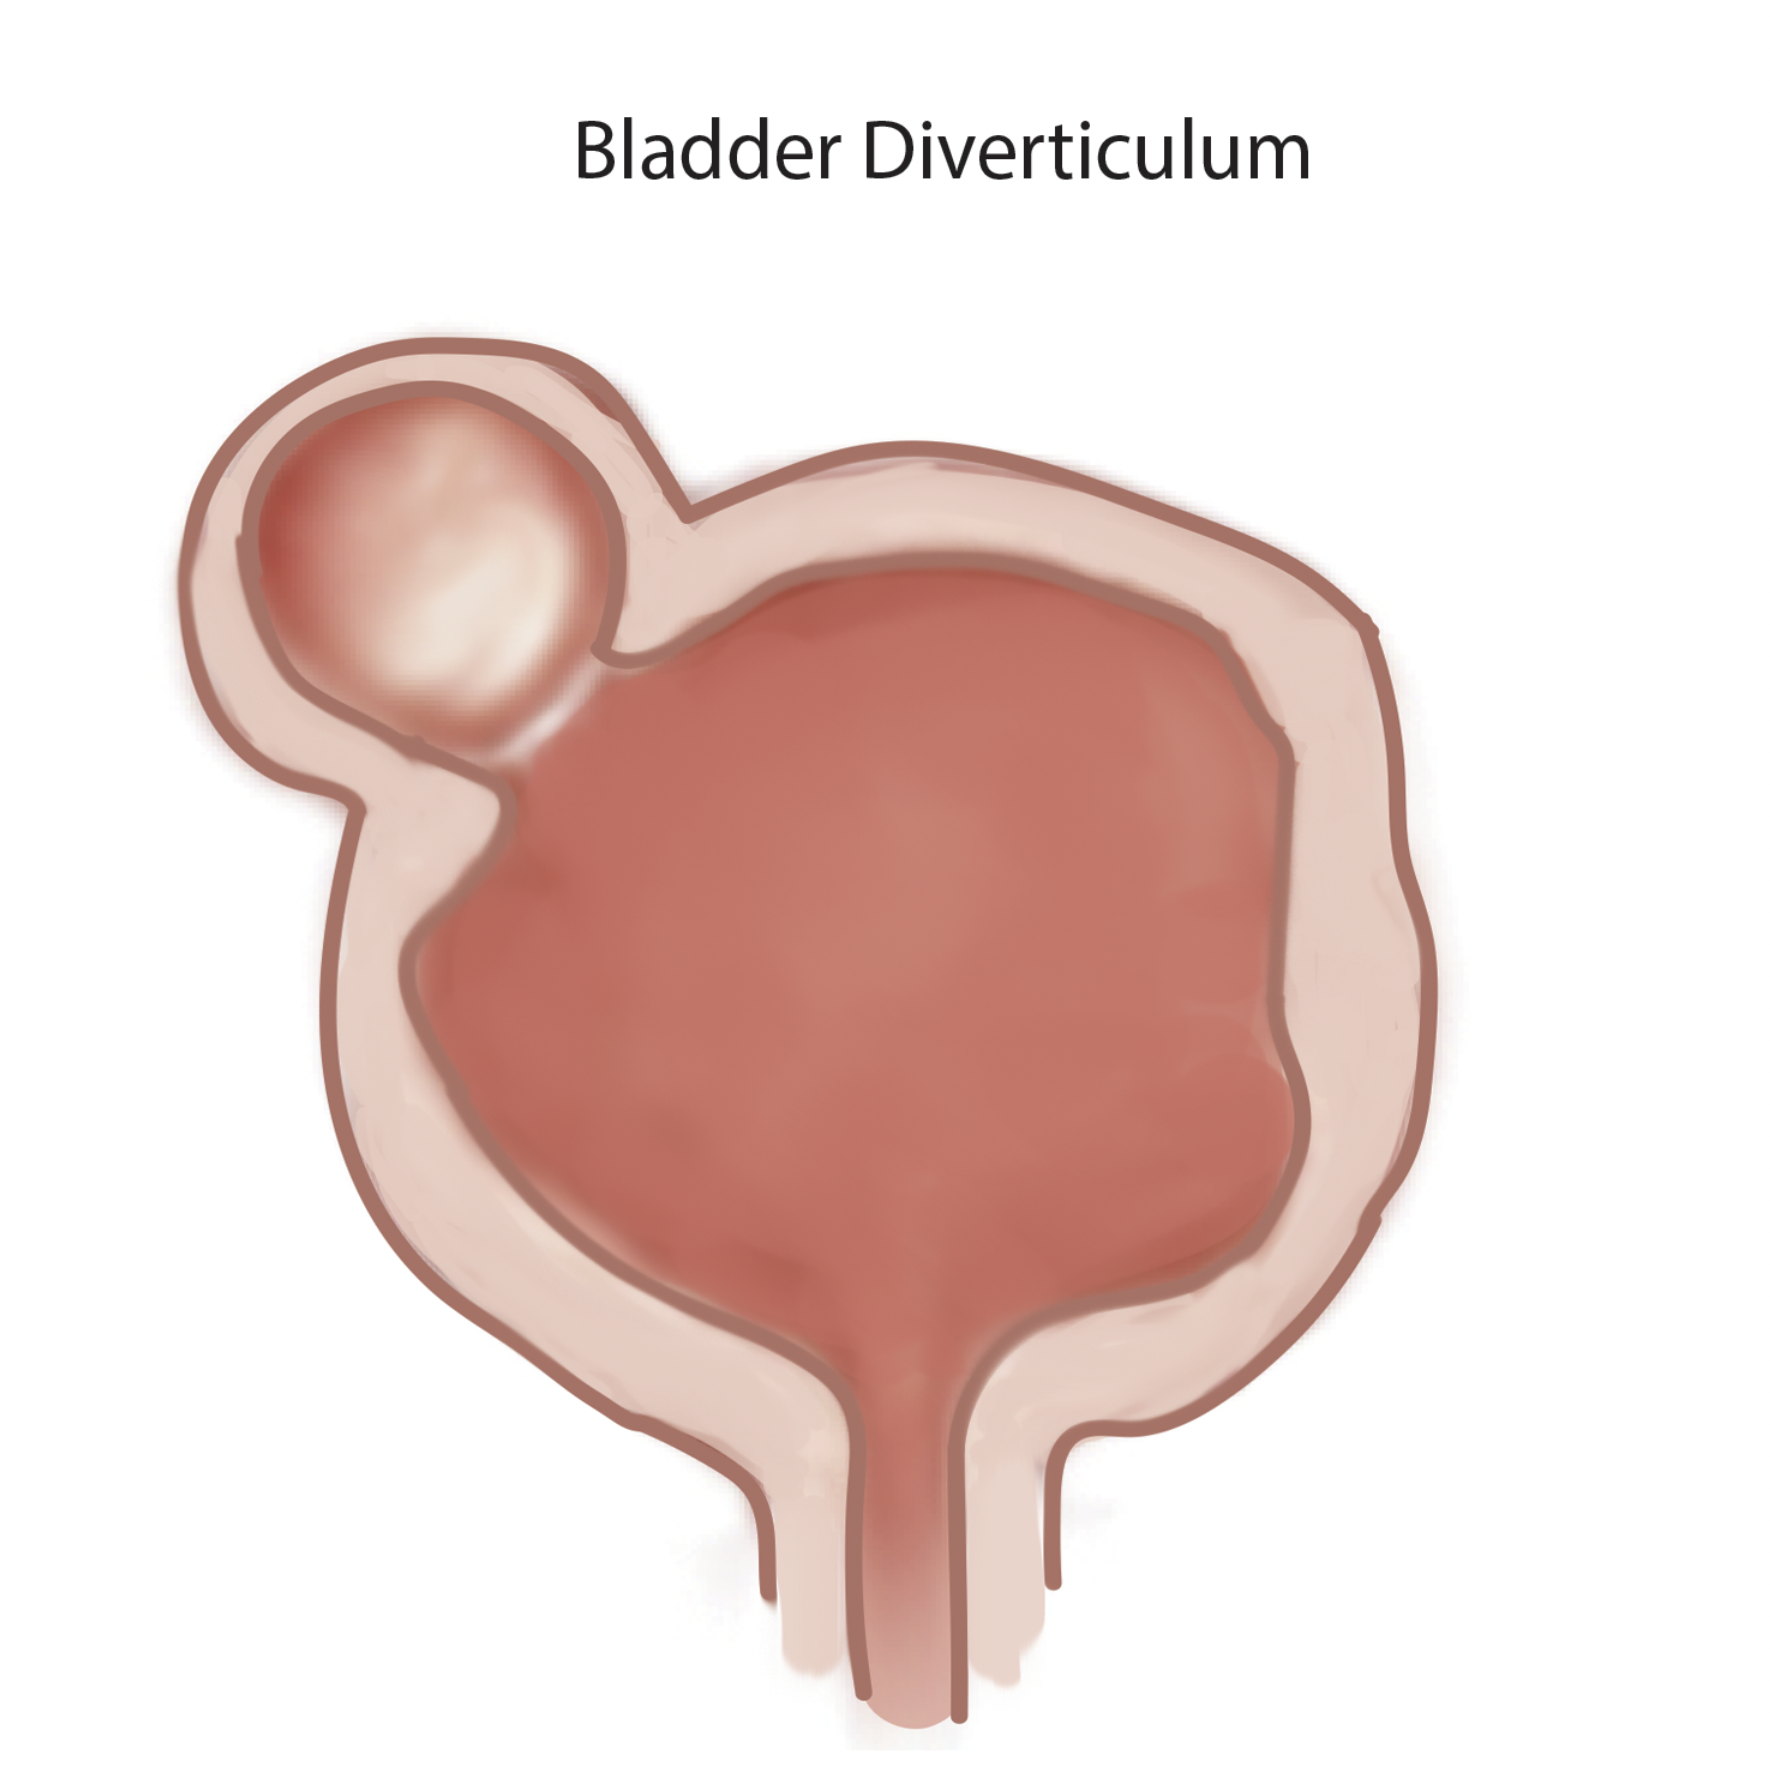 Illustration of a bladder diverticulum.